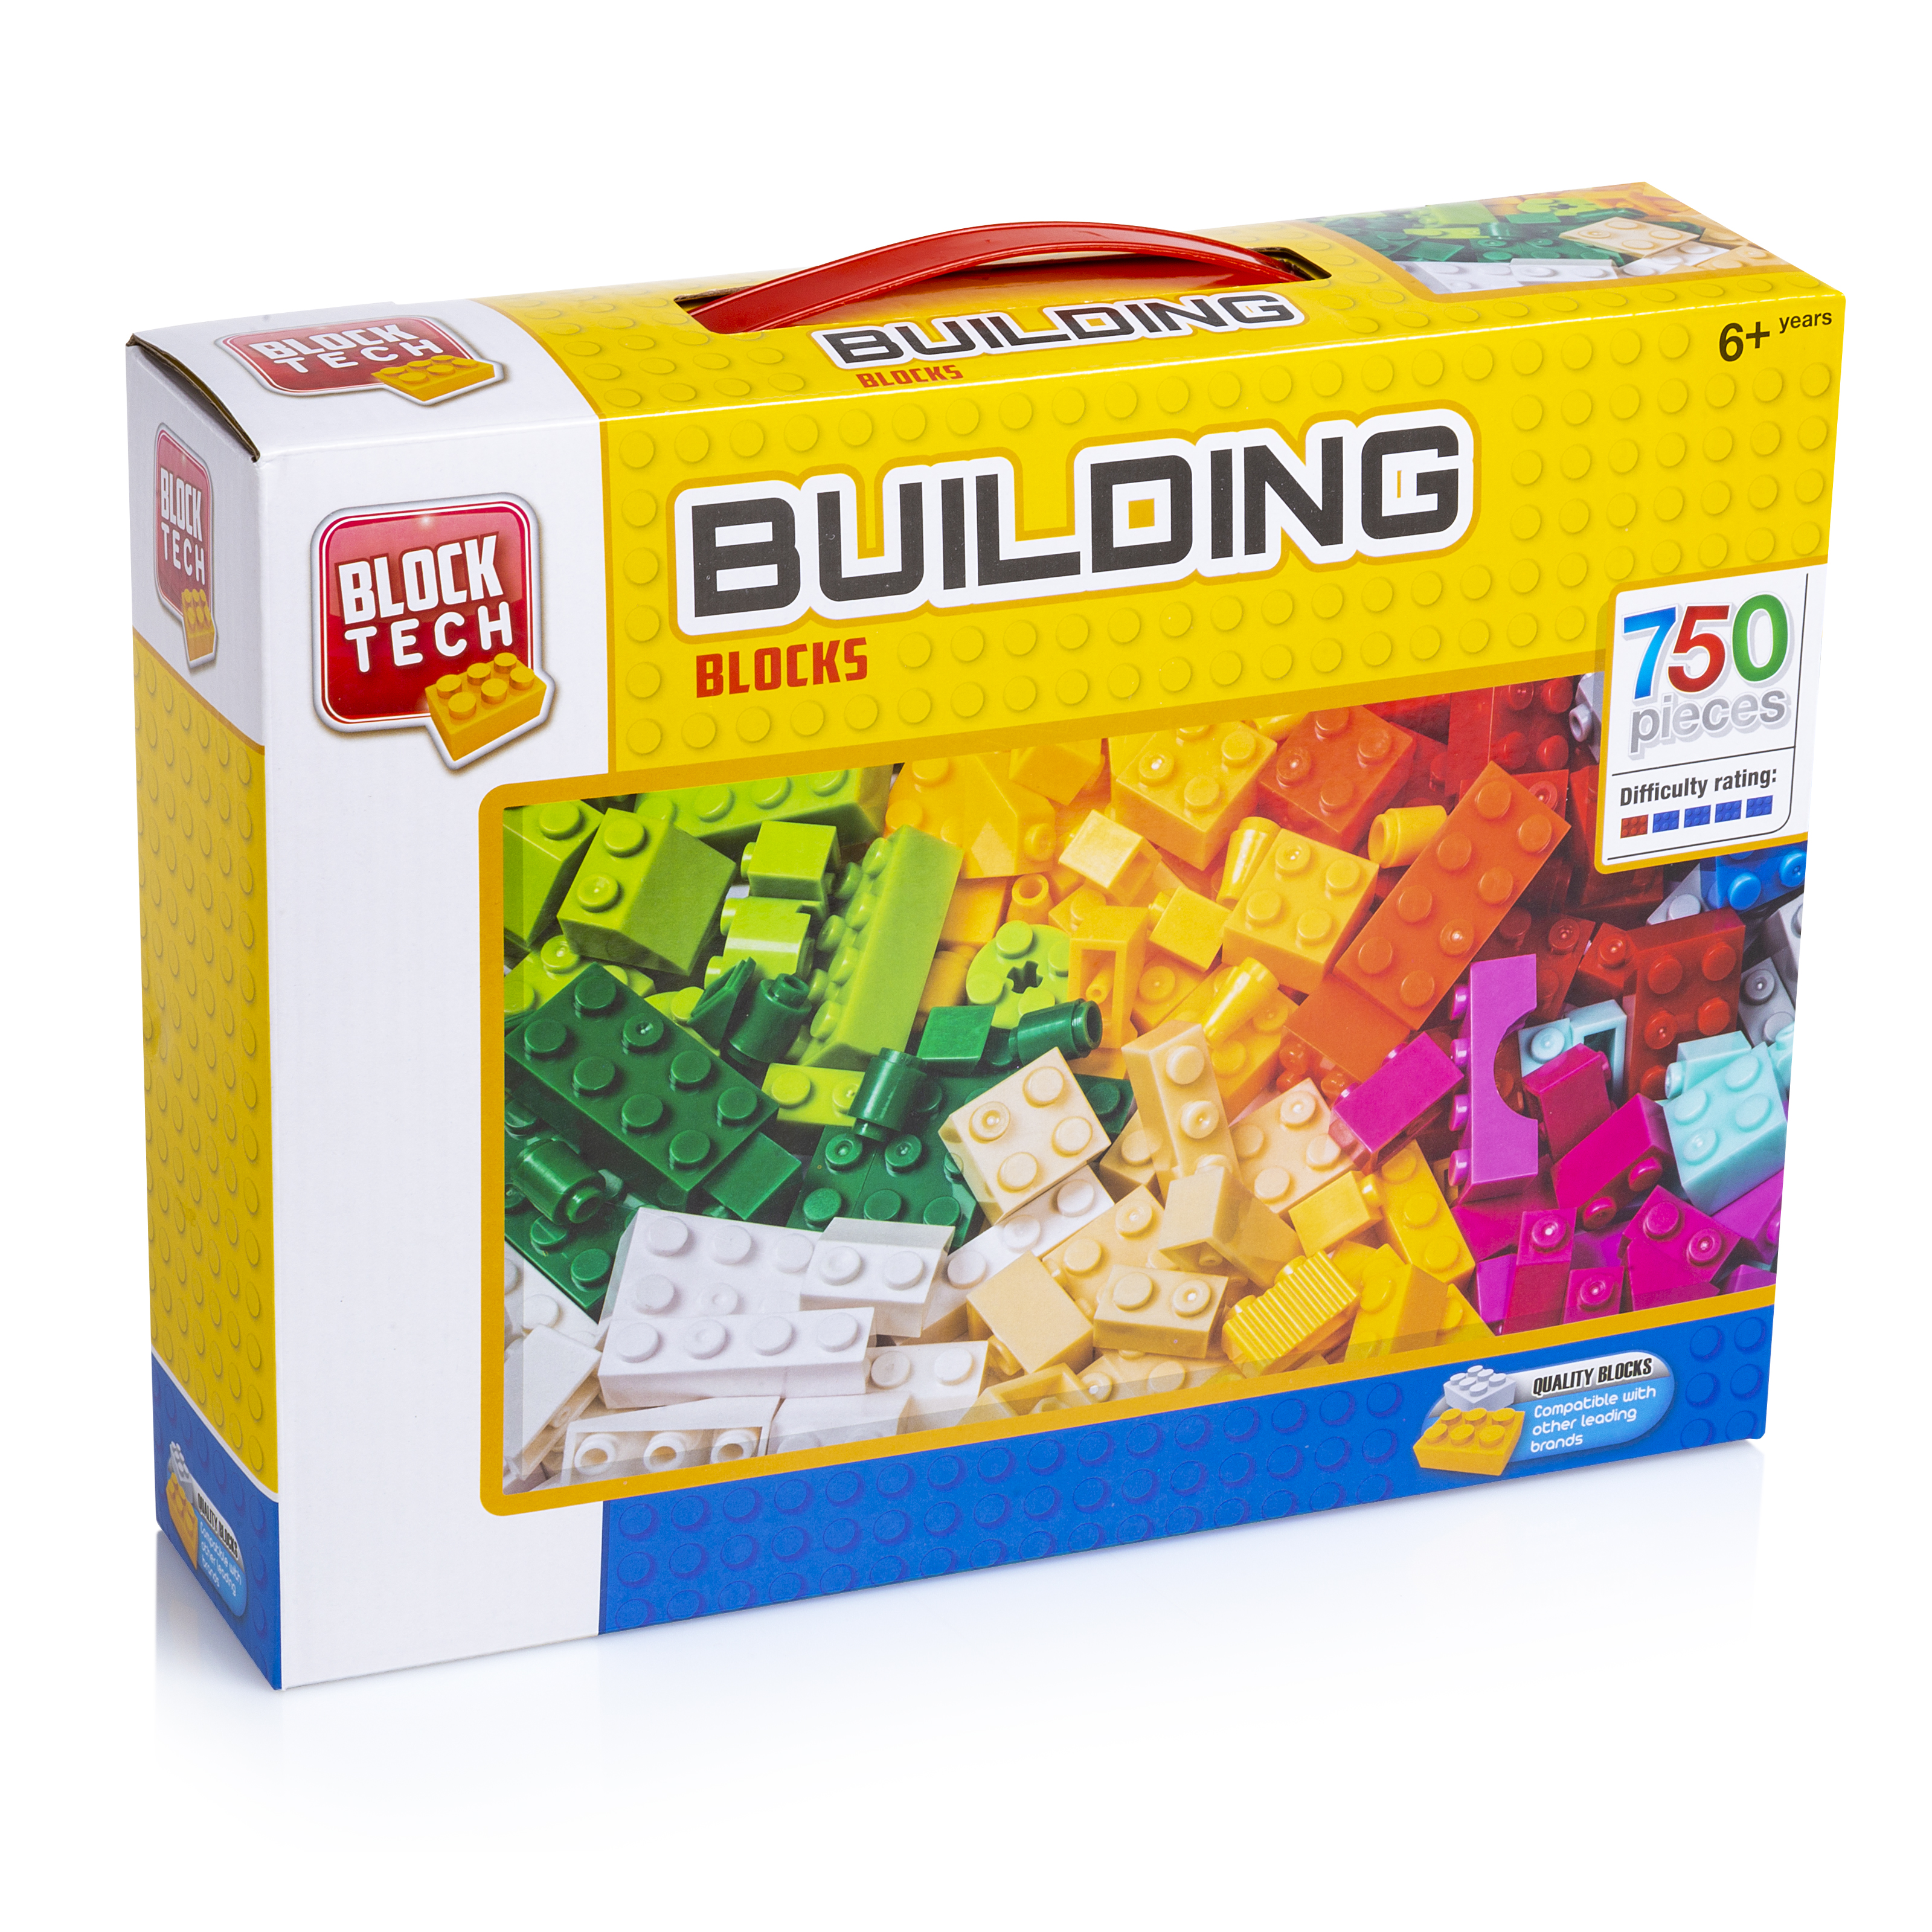 Details about   Block Tech Building Blocks Bulk 30 packs 50 per pack = 1500 Total Block Pieces 